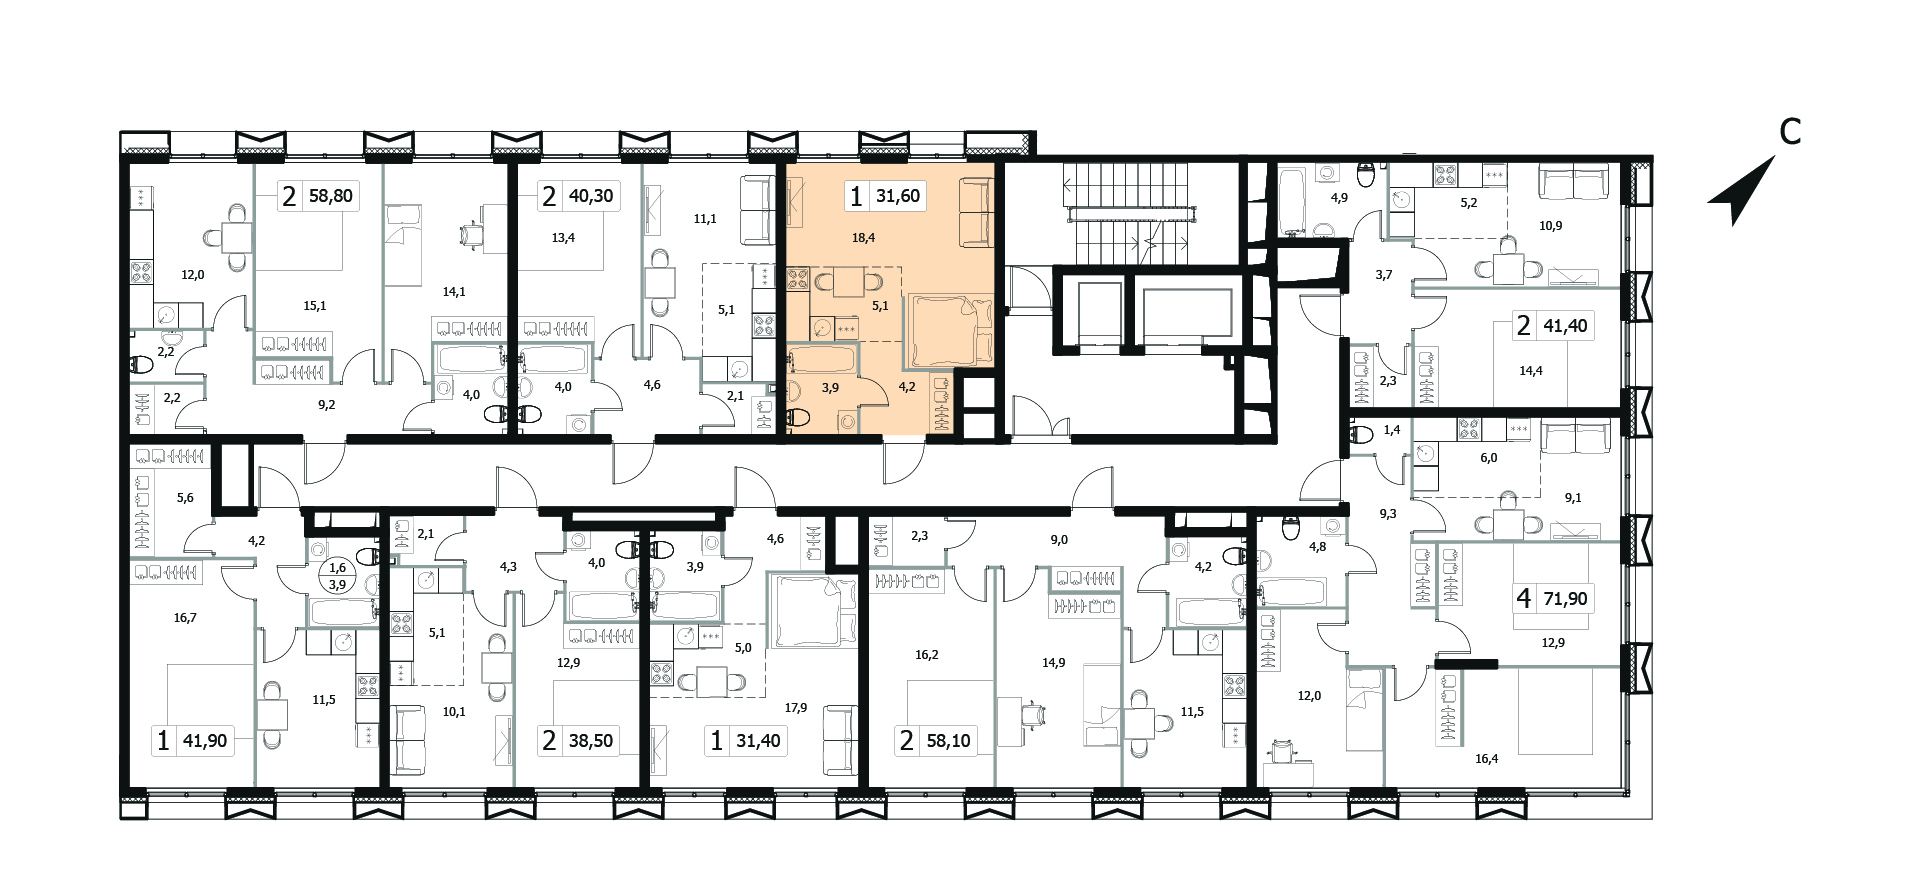 Однокомнатная квартира 31.6м², 3 этаж, Корпус 6 Жилой комплекс «Заречный квартал»